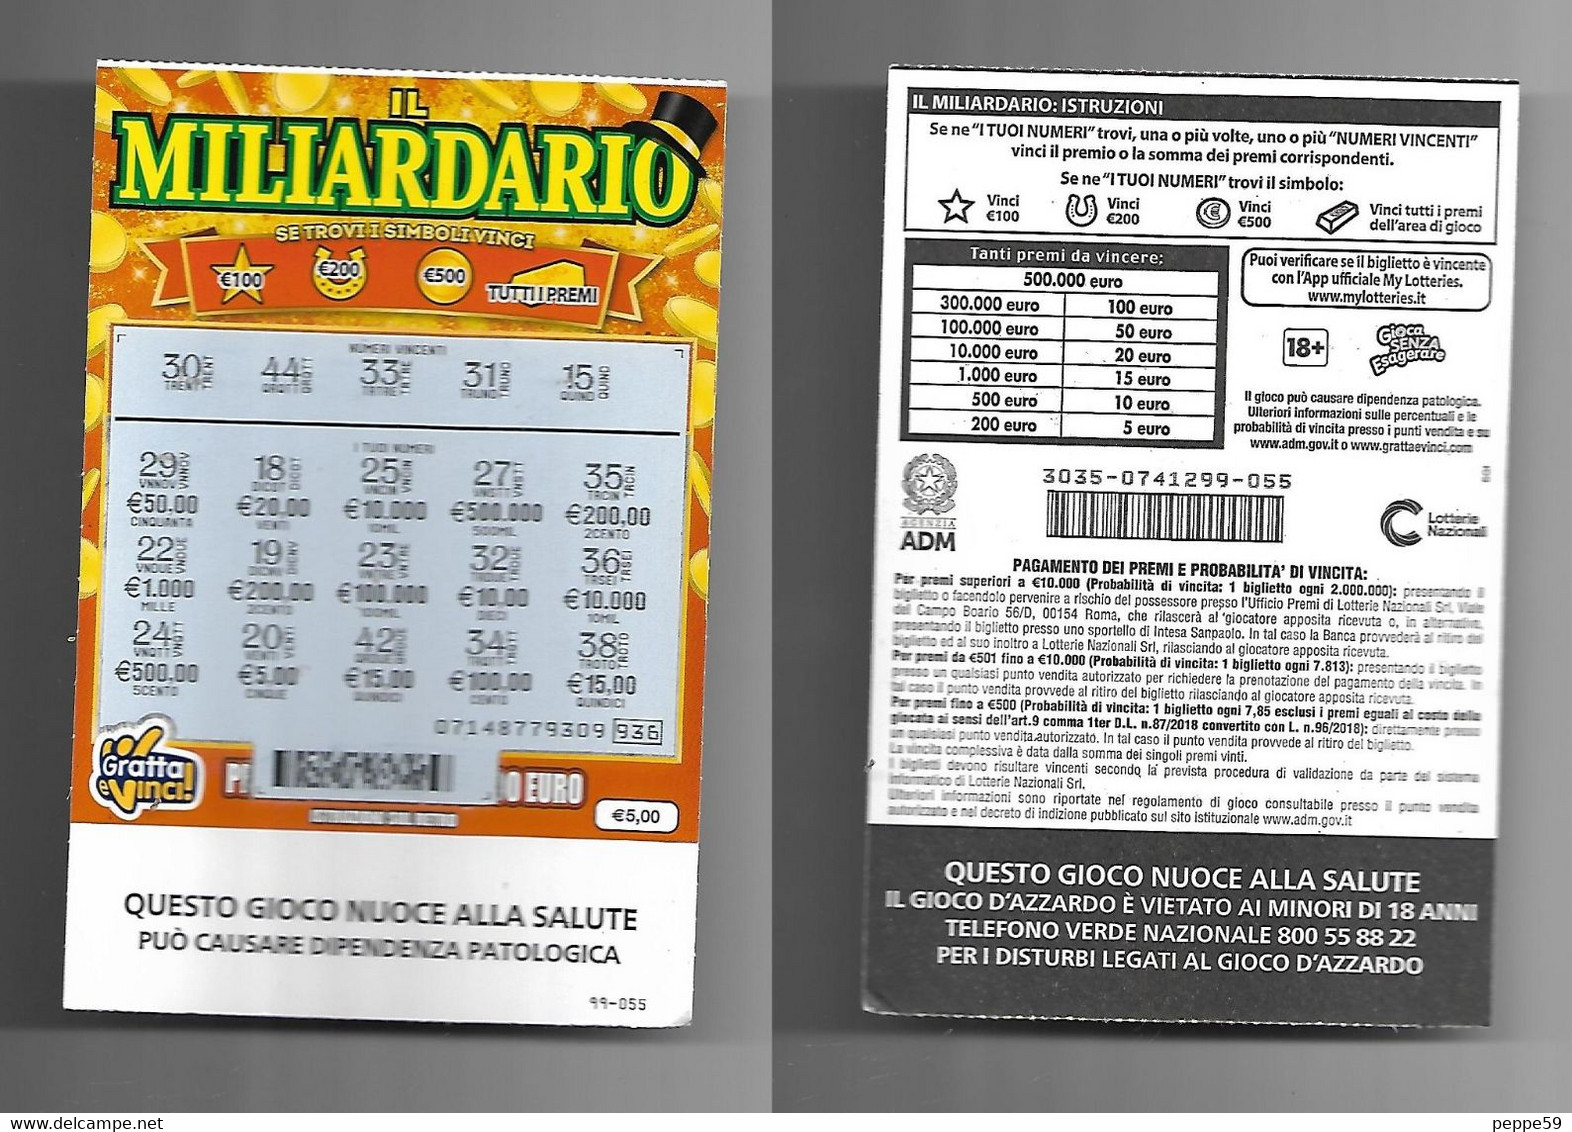 $70K in lottery winnings still unclaimed in RI